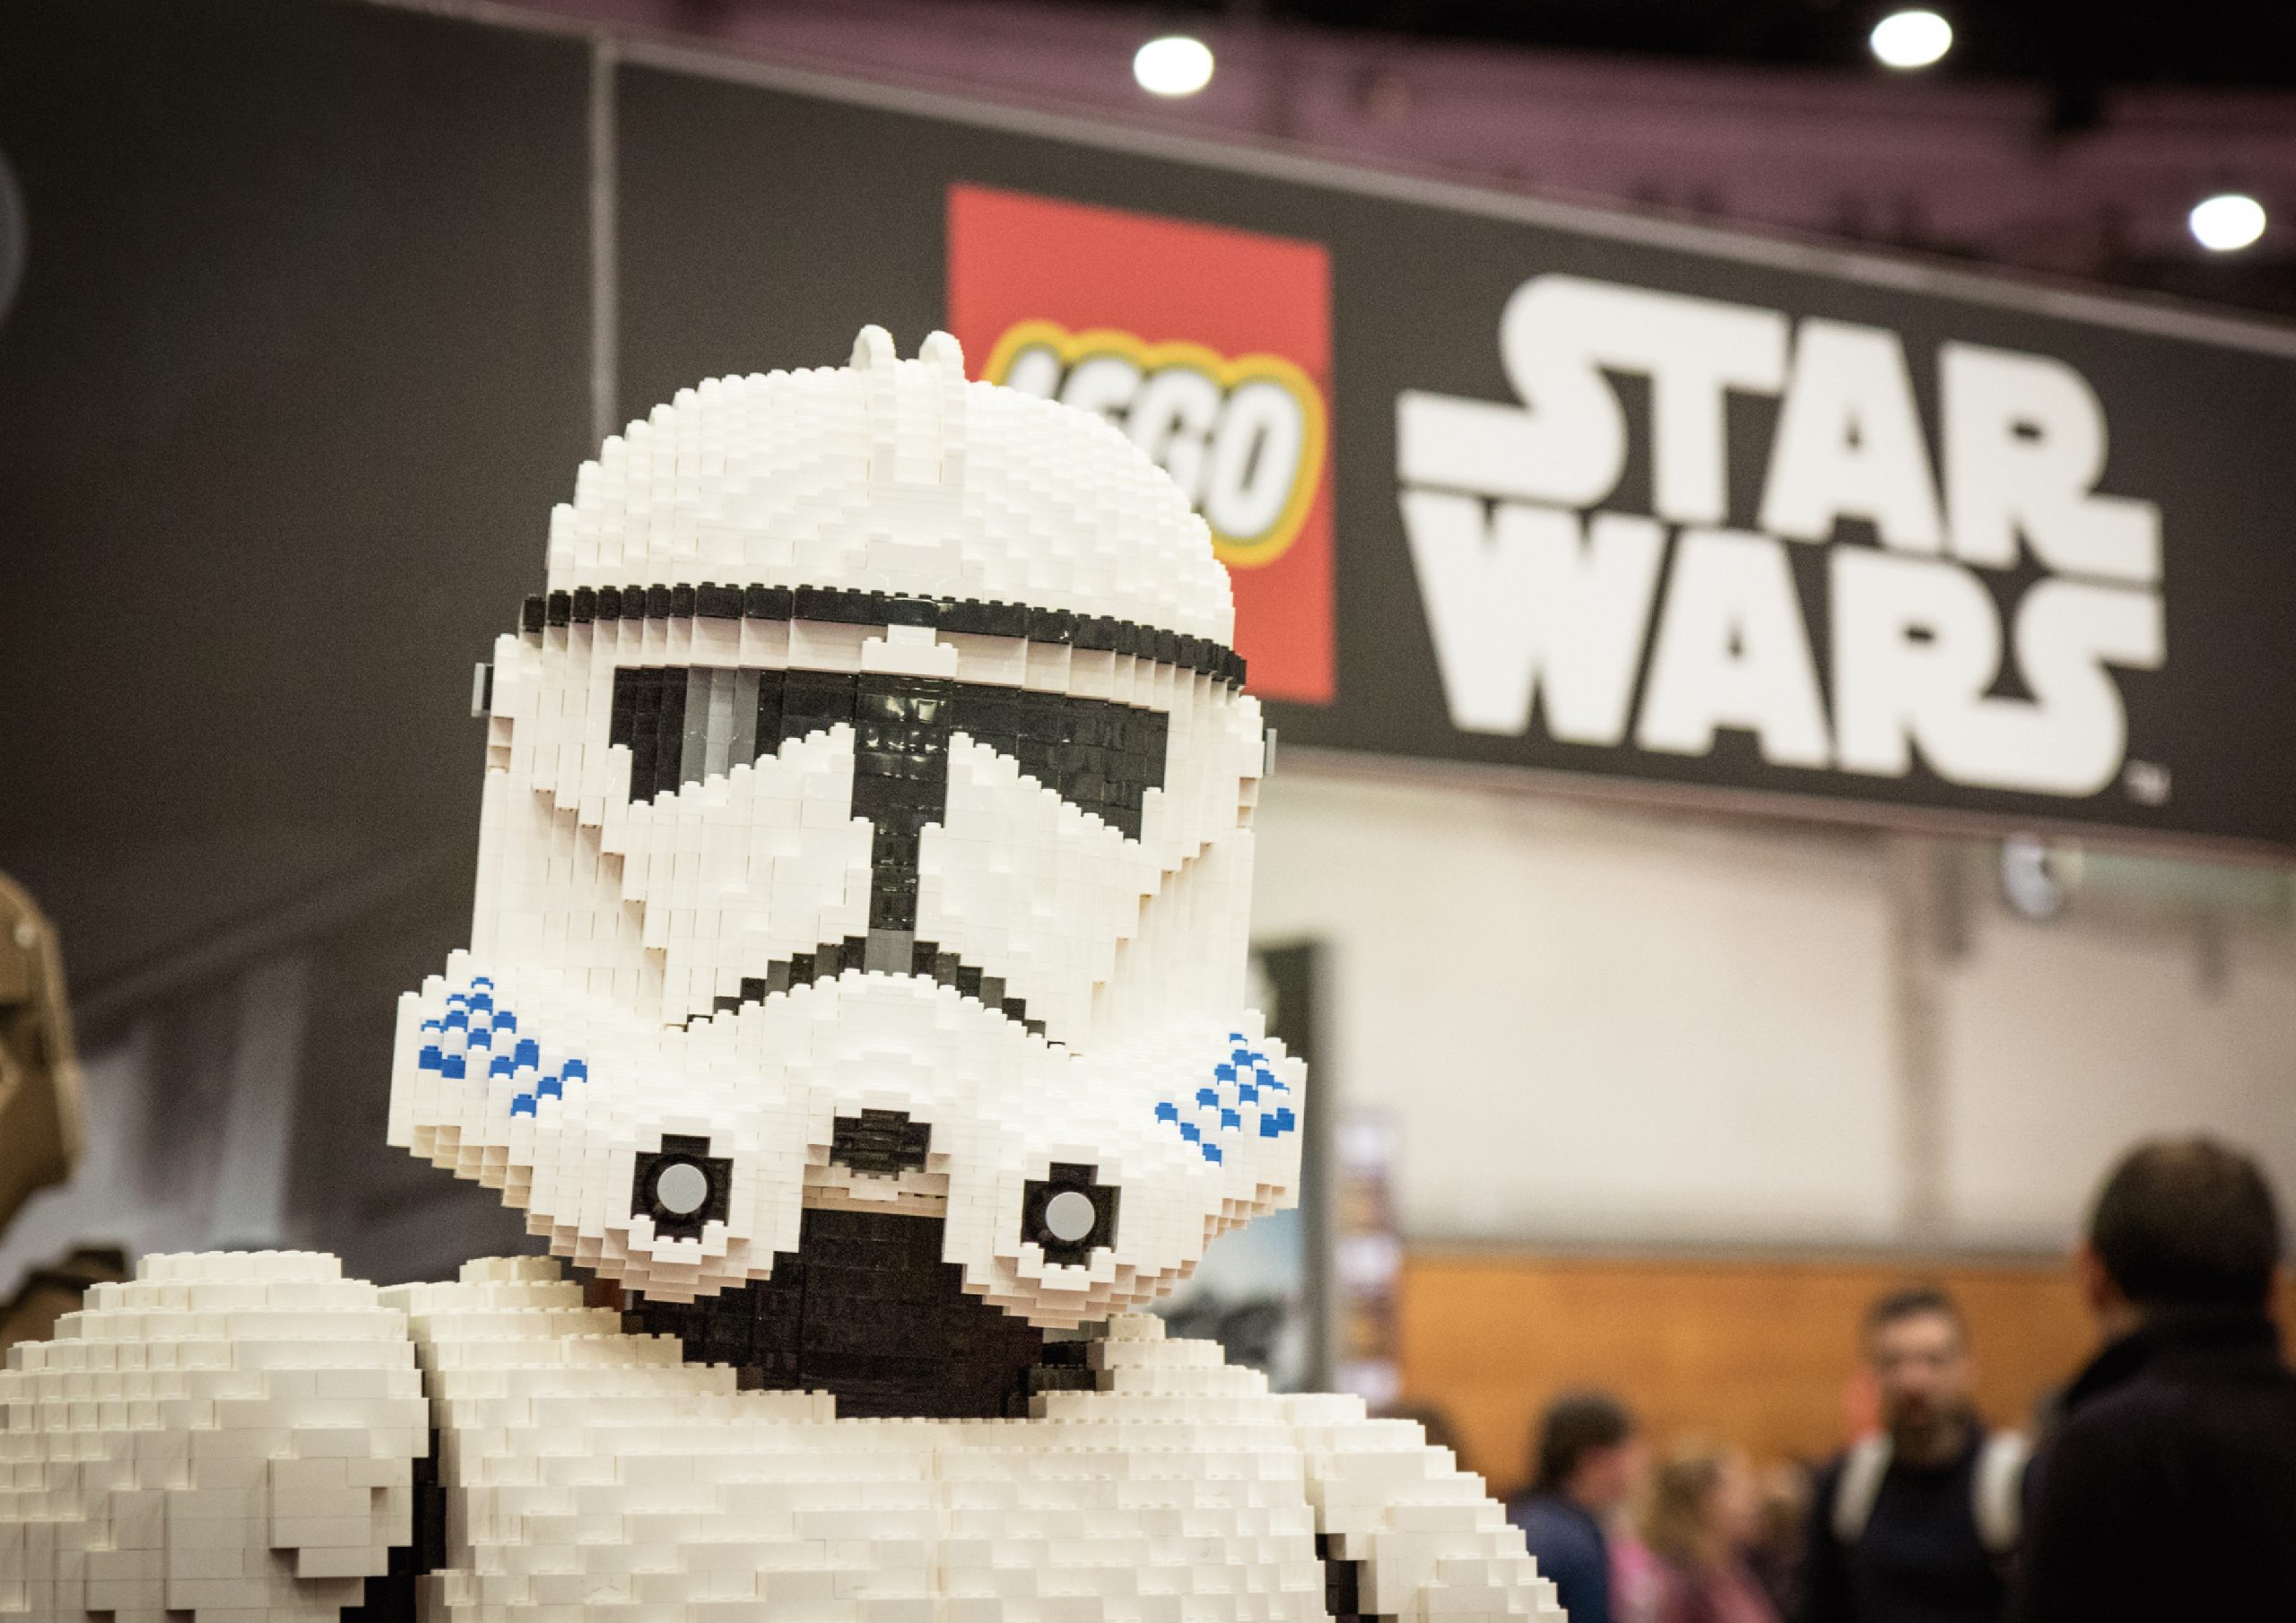 LEGO® STAR WARS EVENT – LEGO®